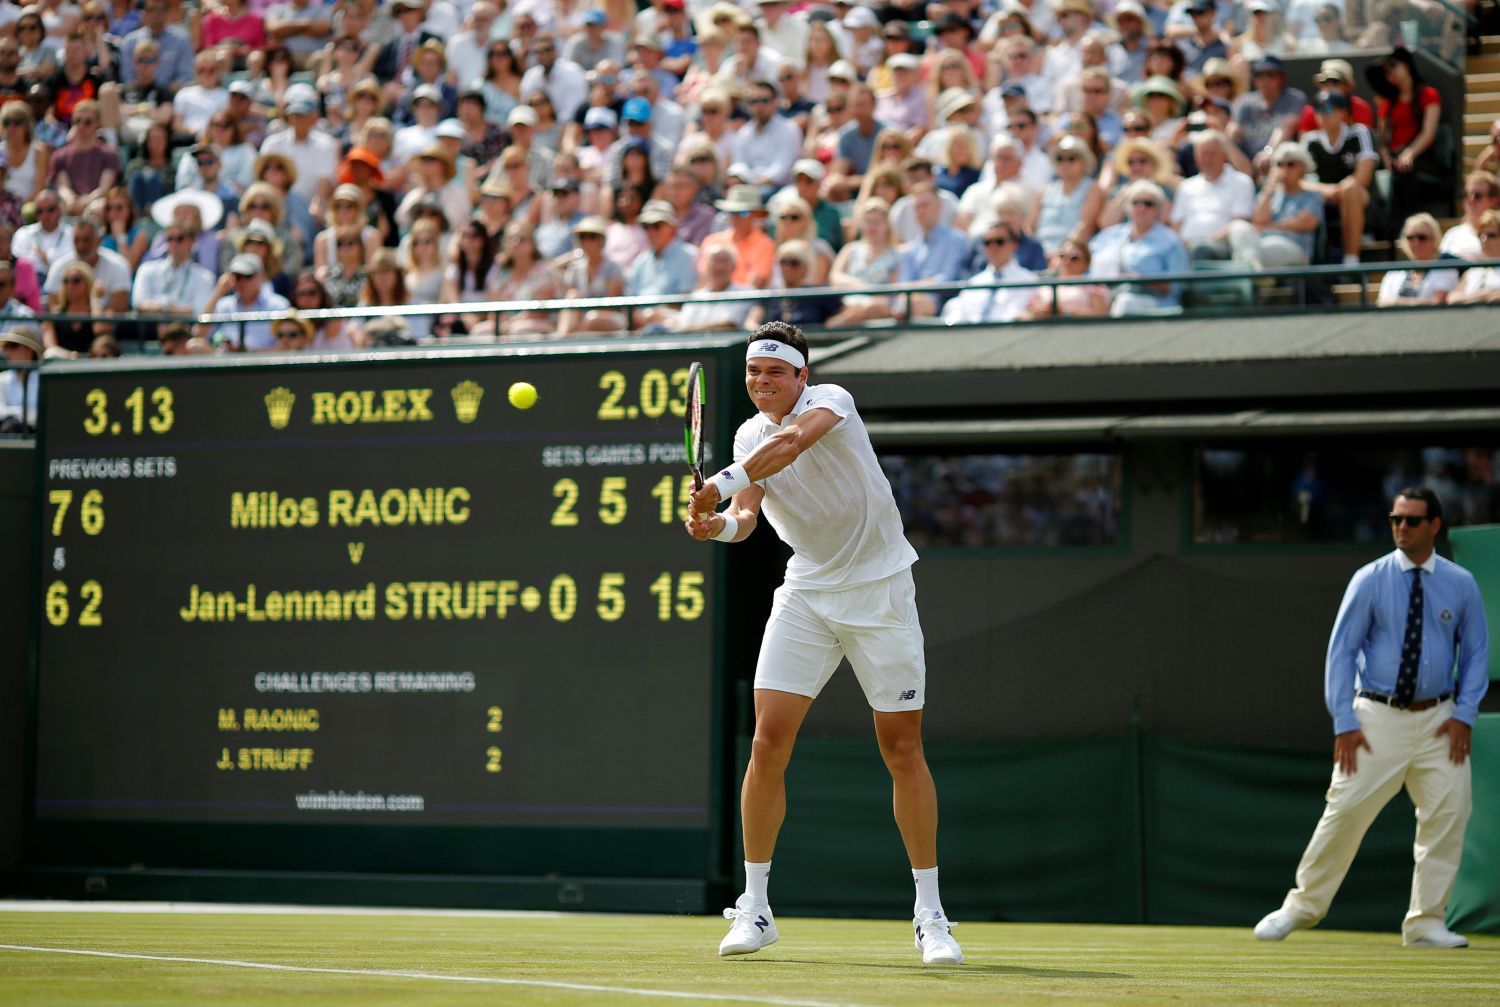 První kolo Wimbledonu 2017: Milos Raonic